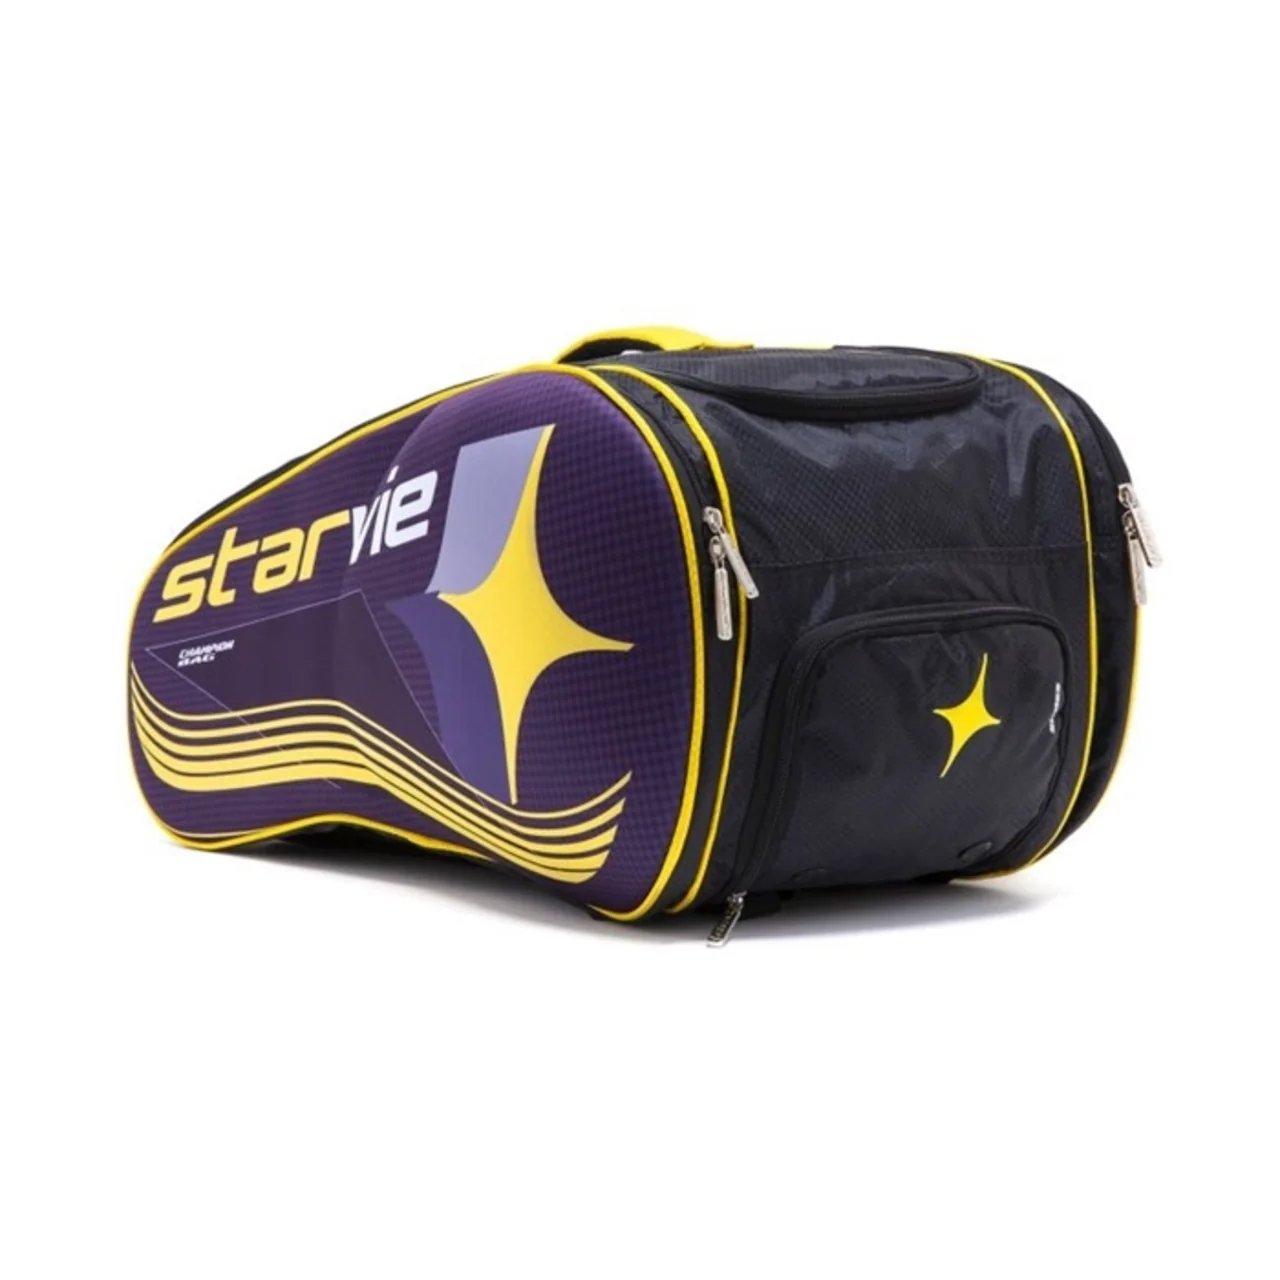 StarVie Champions Bag Yellow